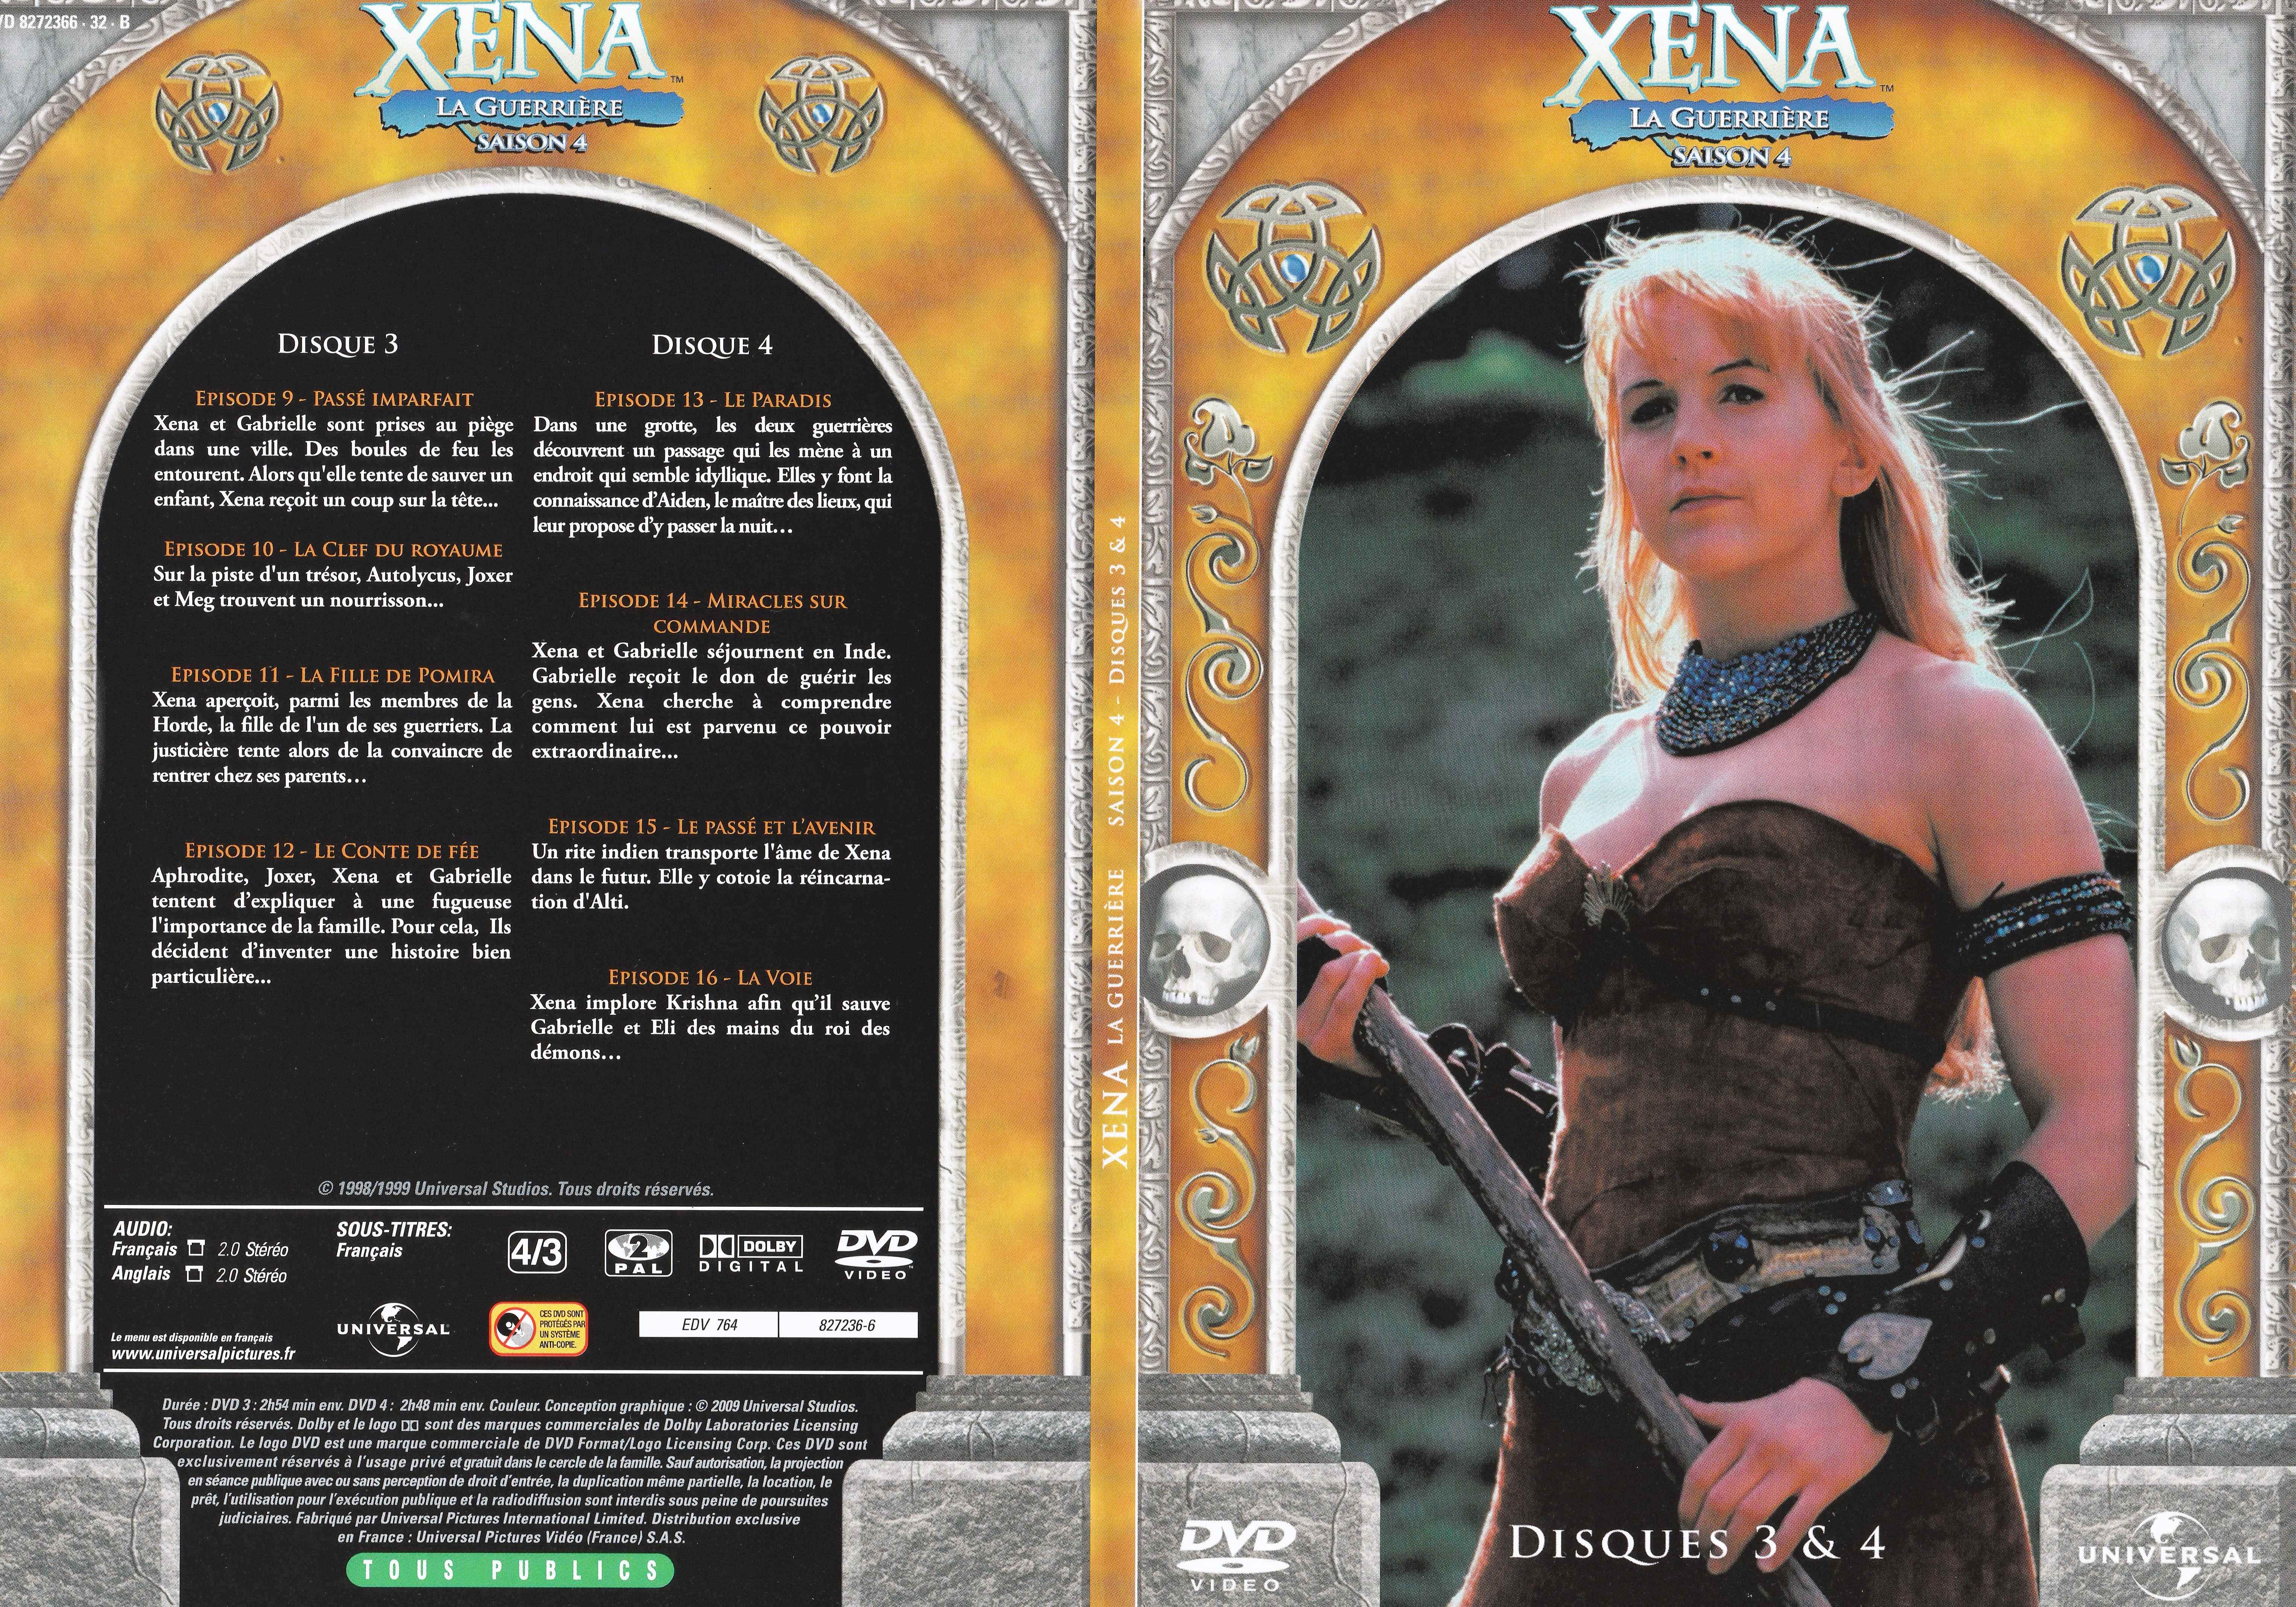 Jaquette DVD Xna la guerrire Saison 4 DVD 2